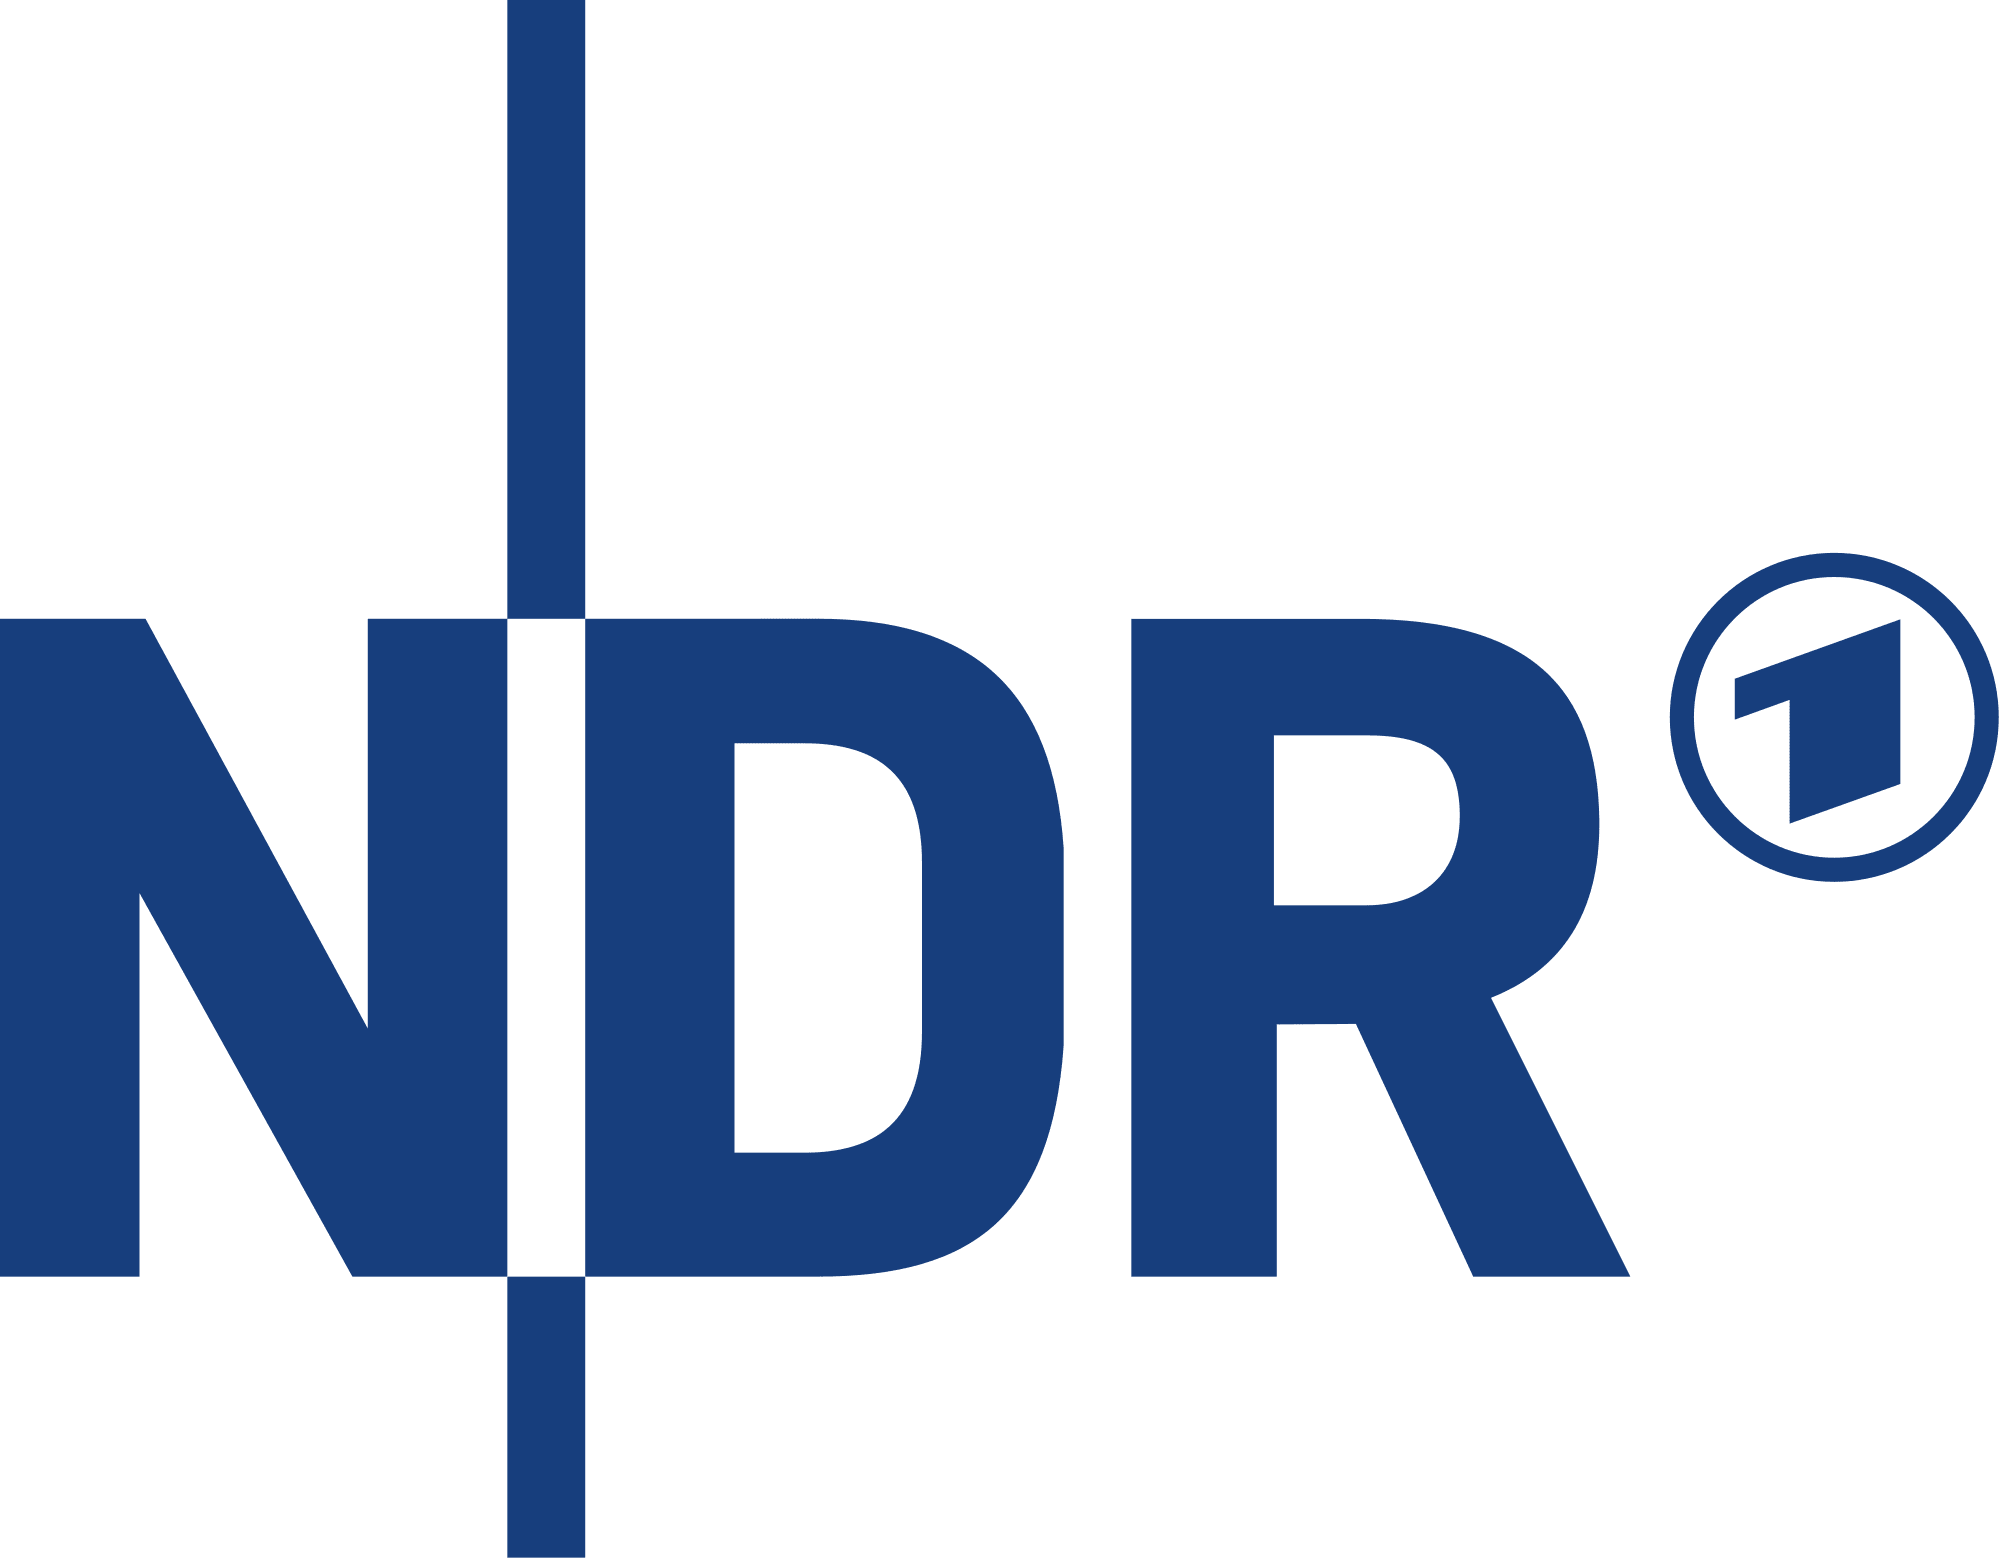 Norddeutscher Rundfunk logo